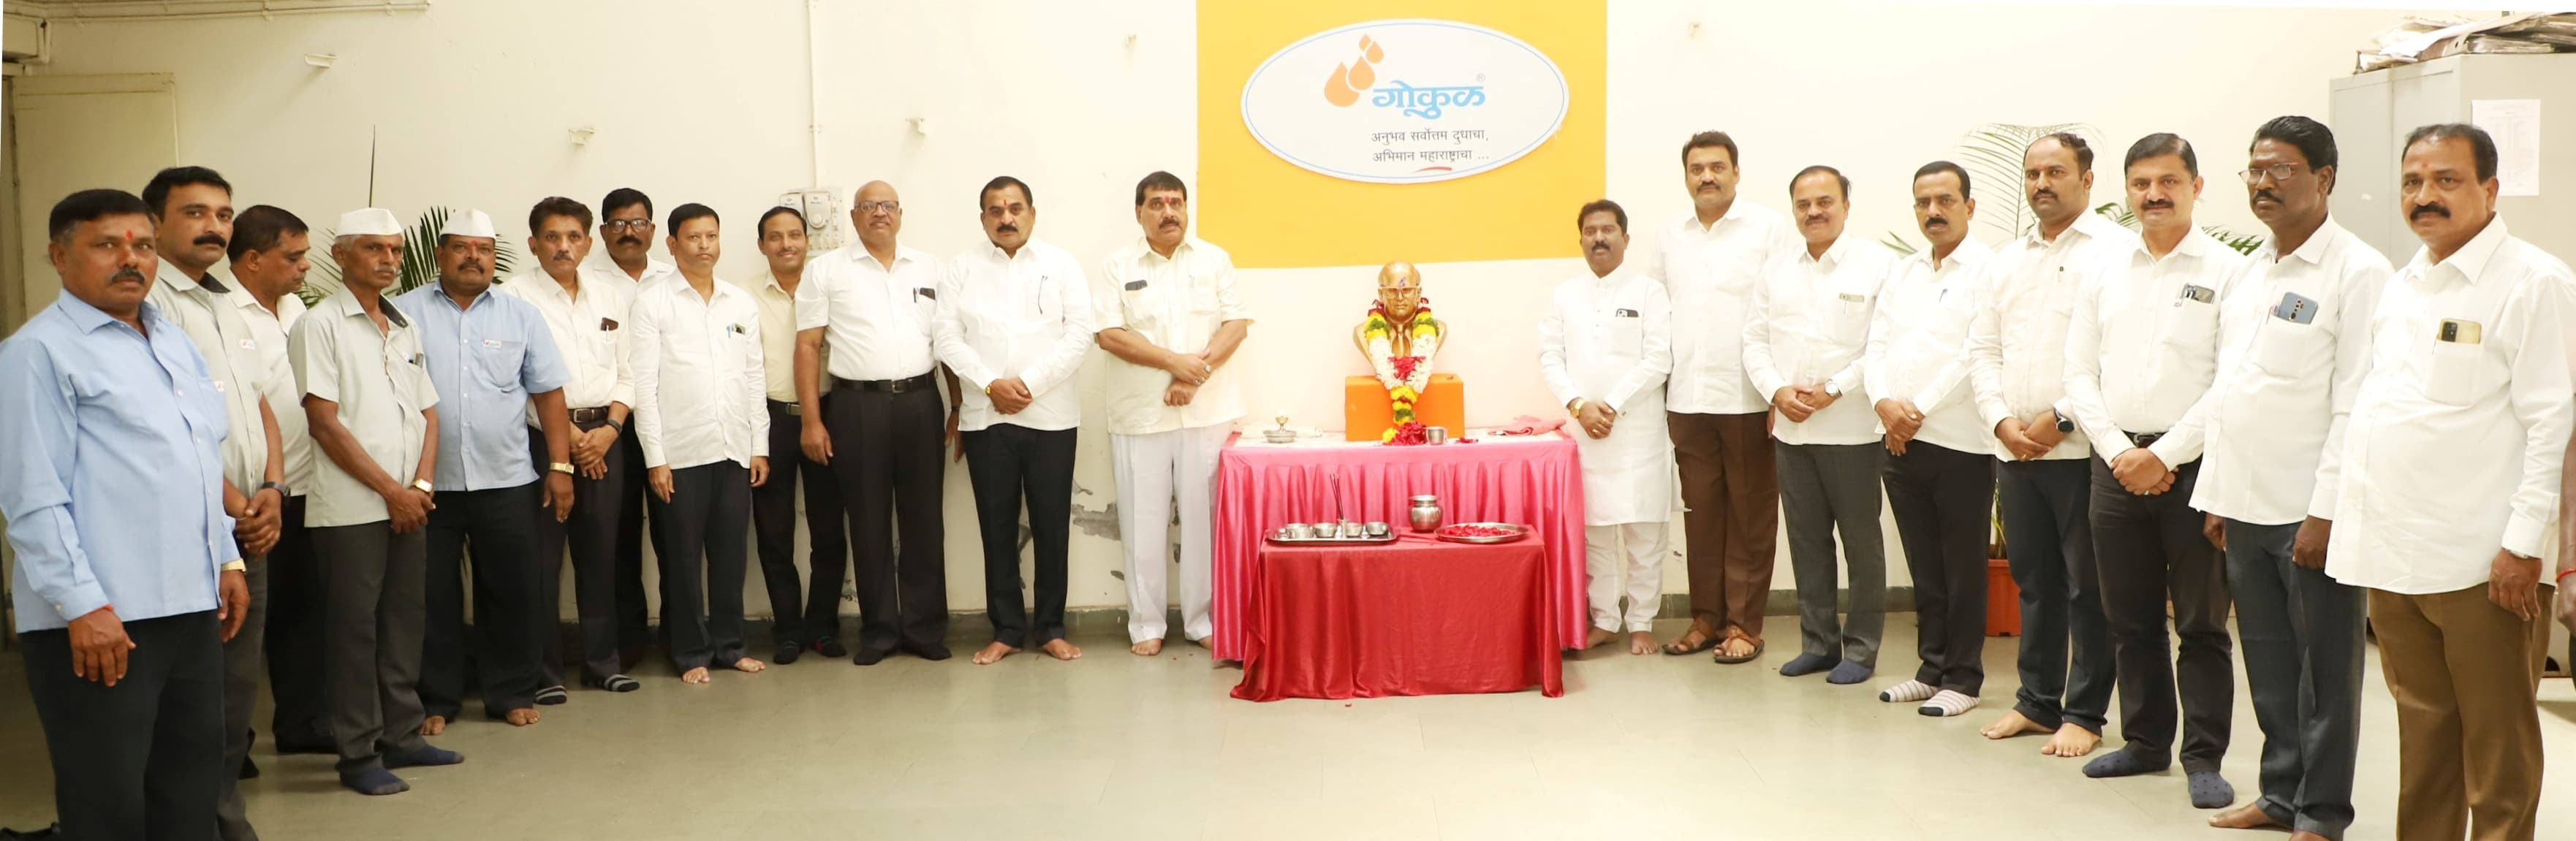 Dr Bharat Ratna through Gokul Babasaheb Ambedkar Jayanti celebrated with enthusiasm